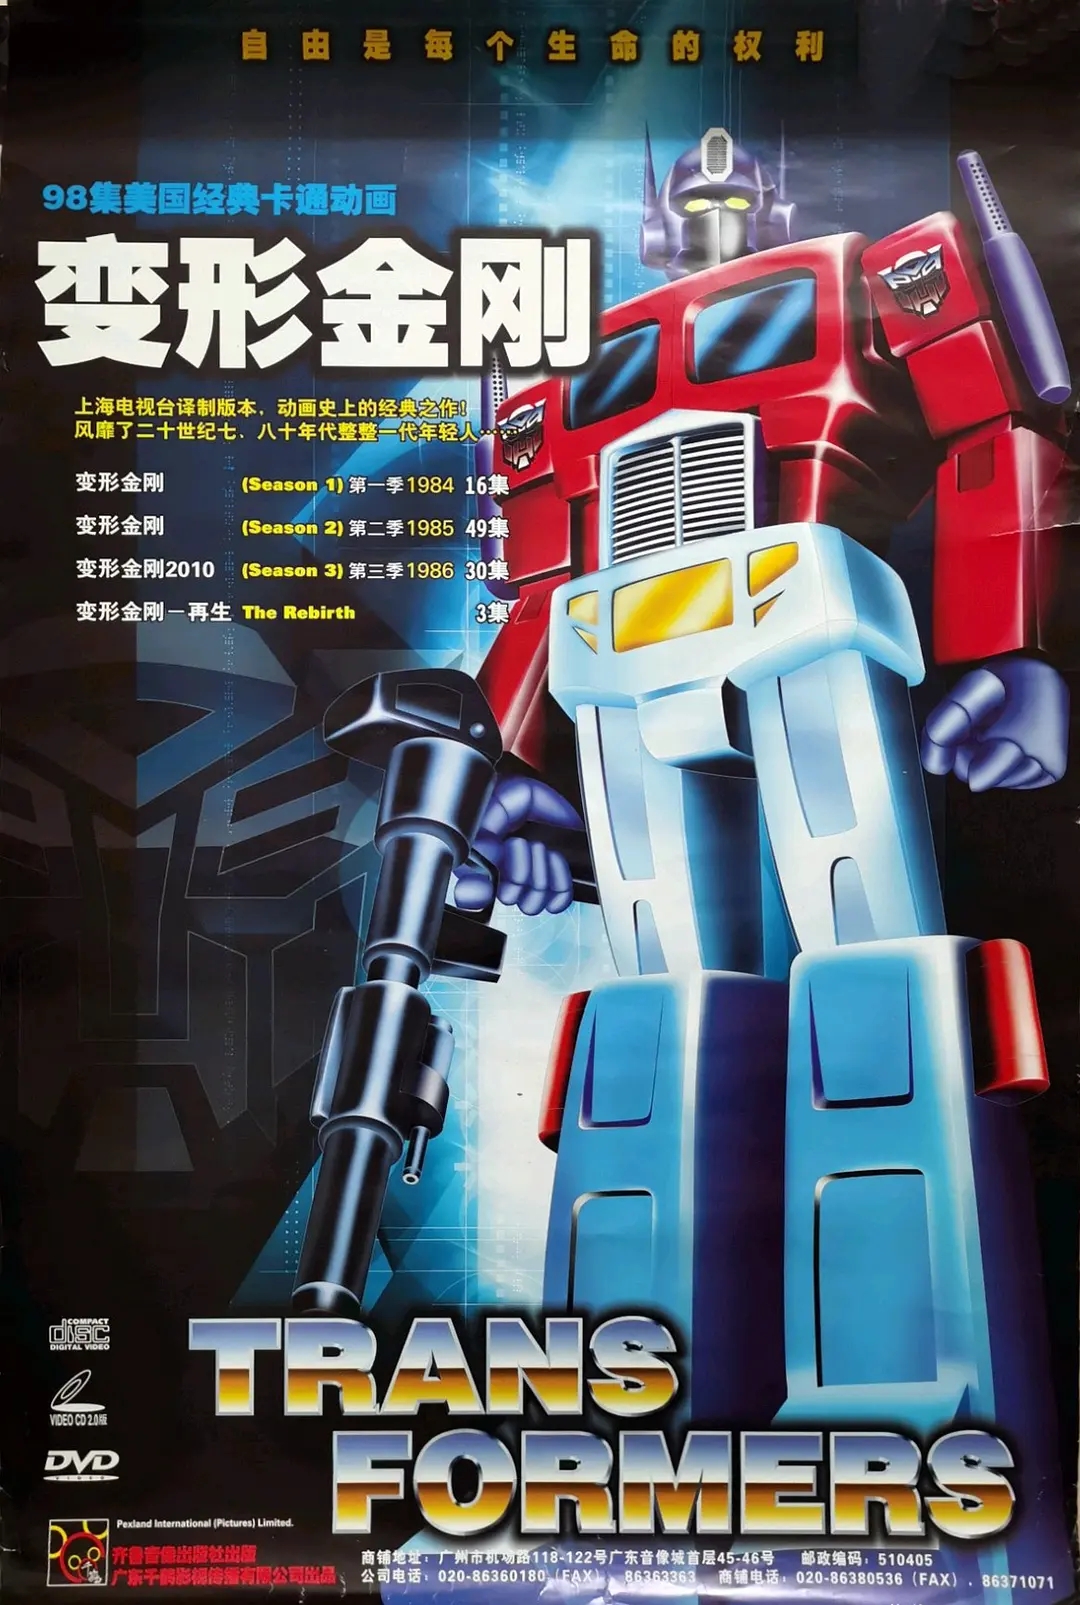 变形金刚 第一季 Transformers Season 1 (1984) 国配版儿时的记忆